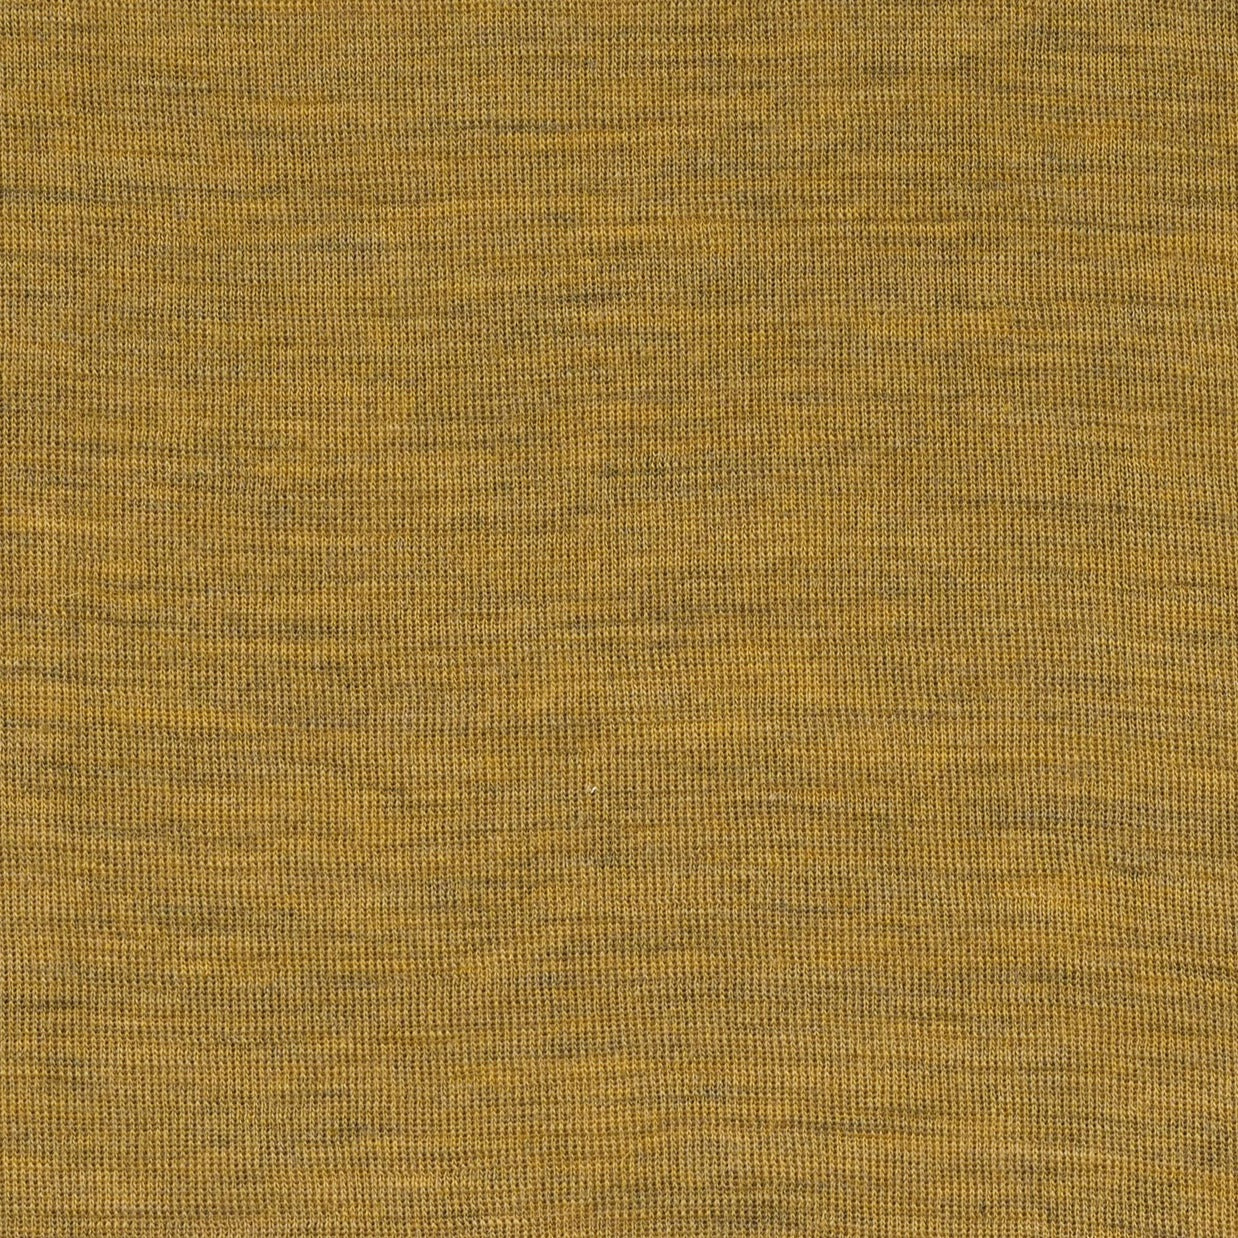 Load image into Gallery viewer, Engel Wool Repair Patch, 100% Fine Wool
